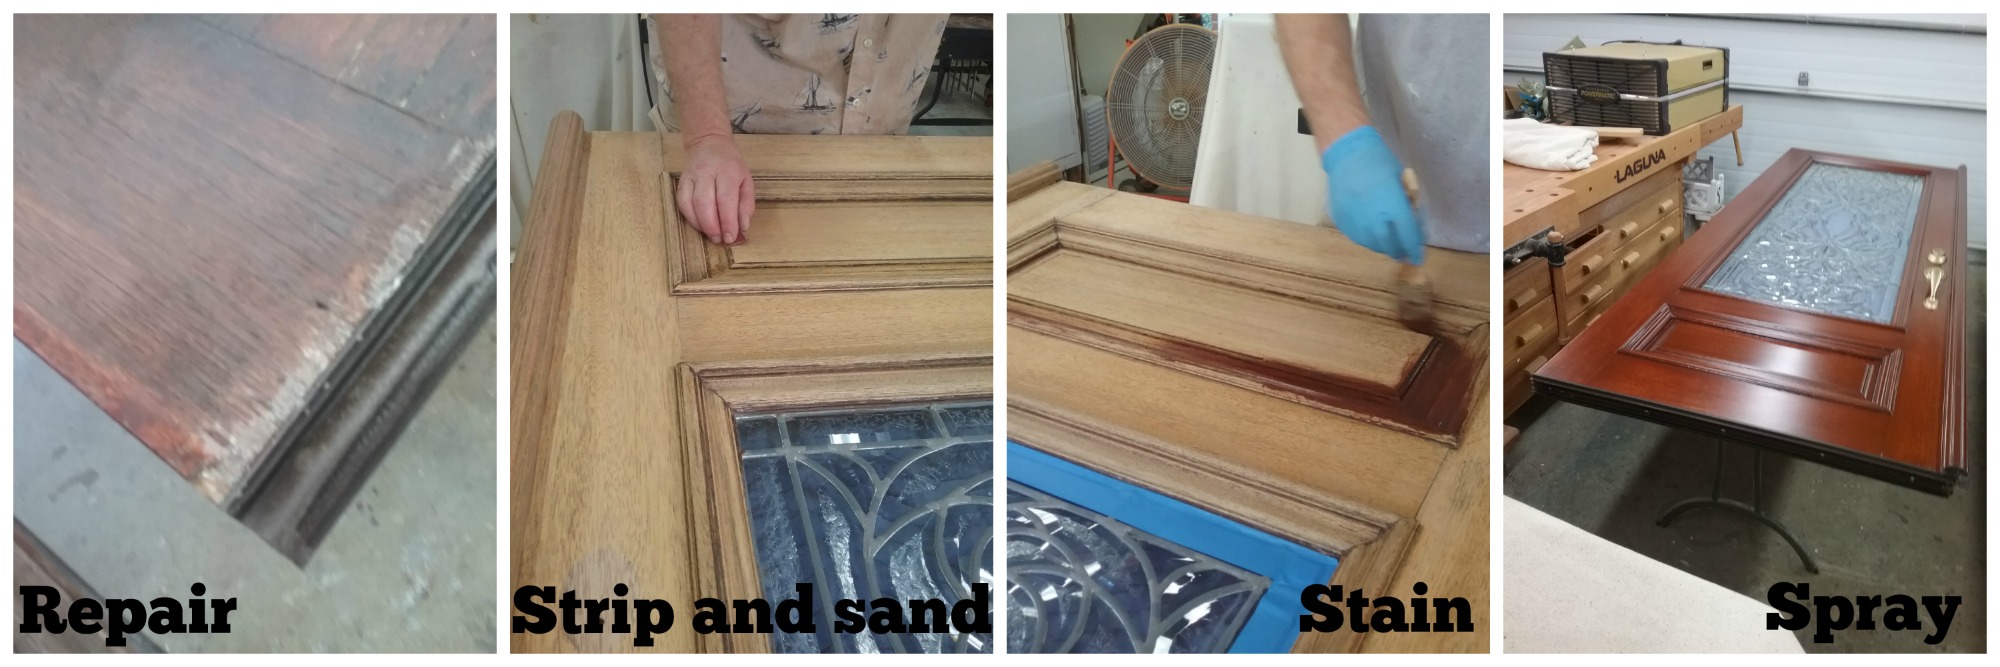 Wooden door refinishing process